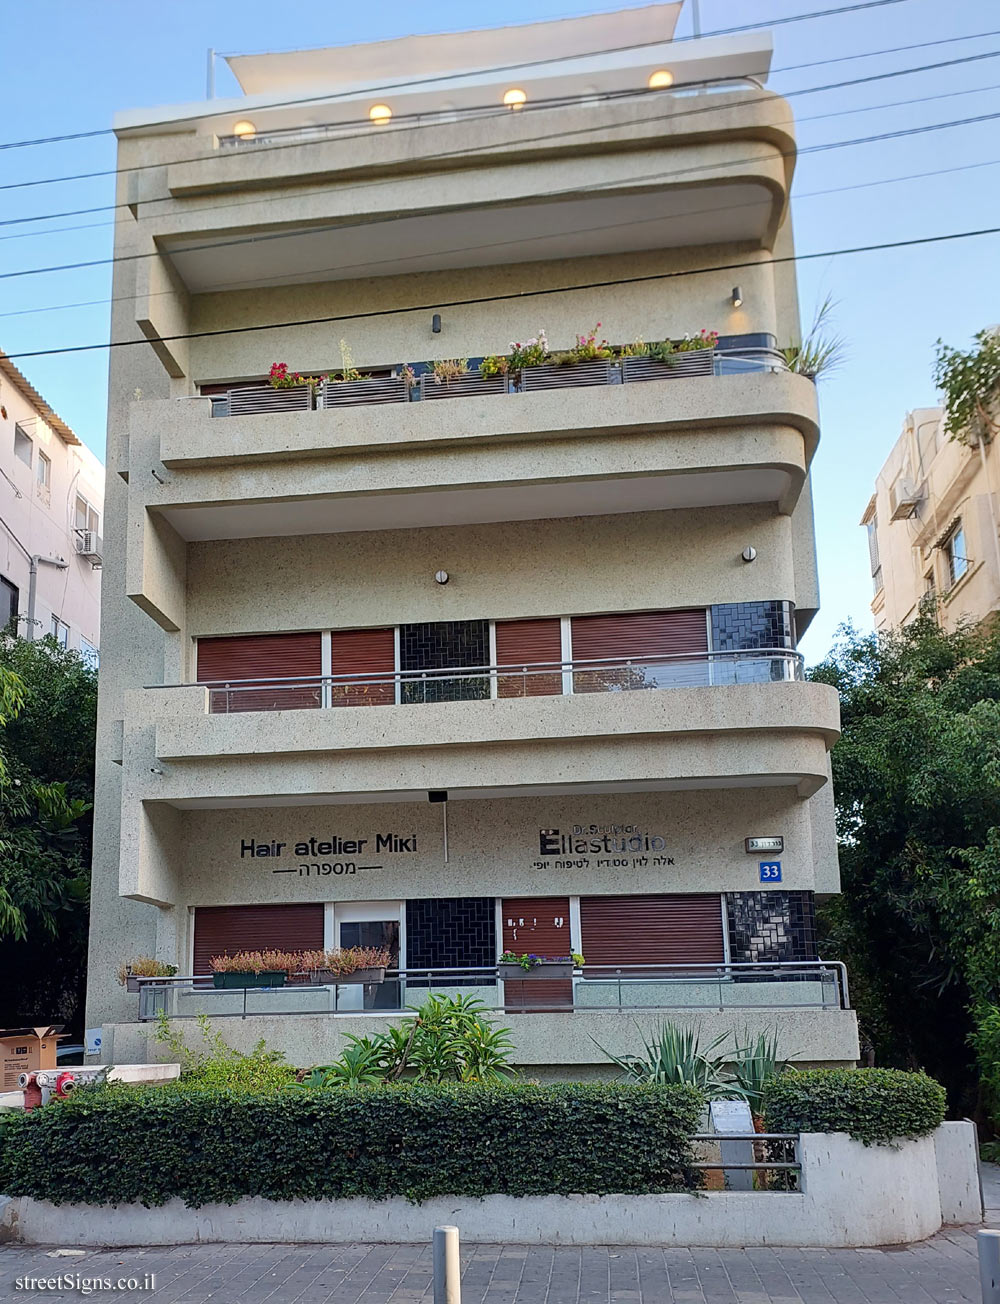 Tel Aviv - buildings for conservation - 33 Gordon - J. L. Gordon St 33, Tel Aviv-Yafo, Israel